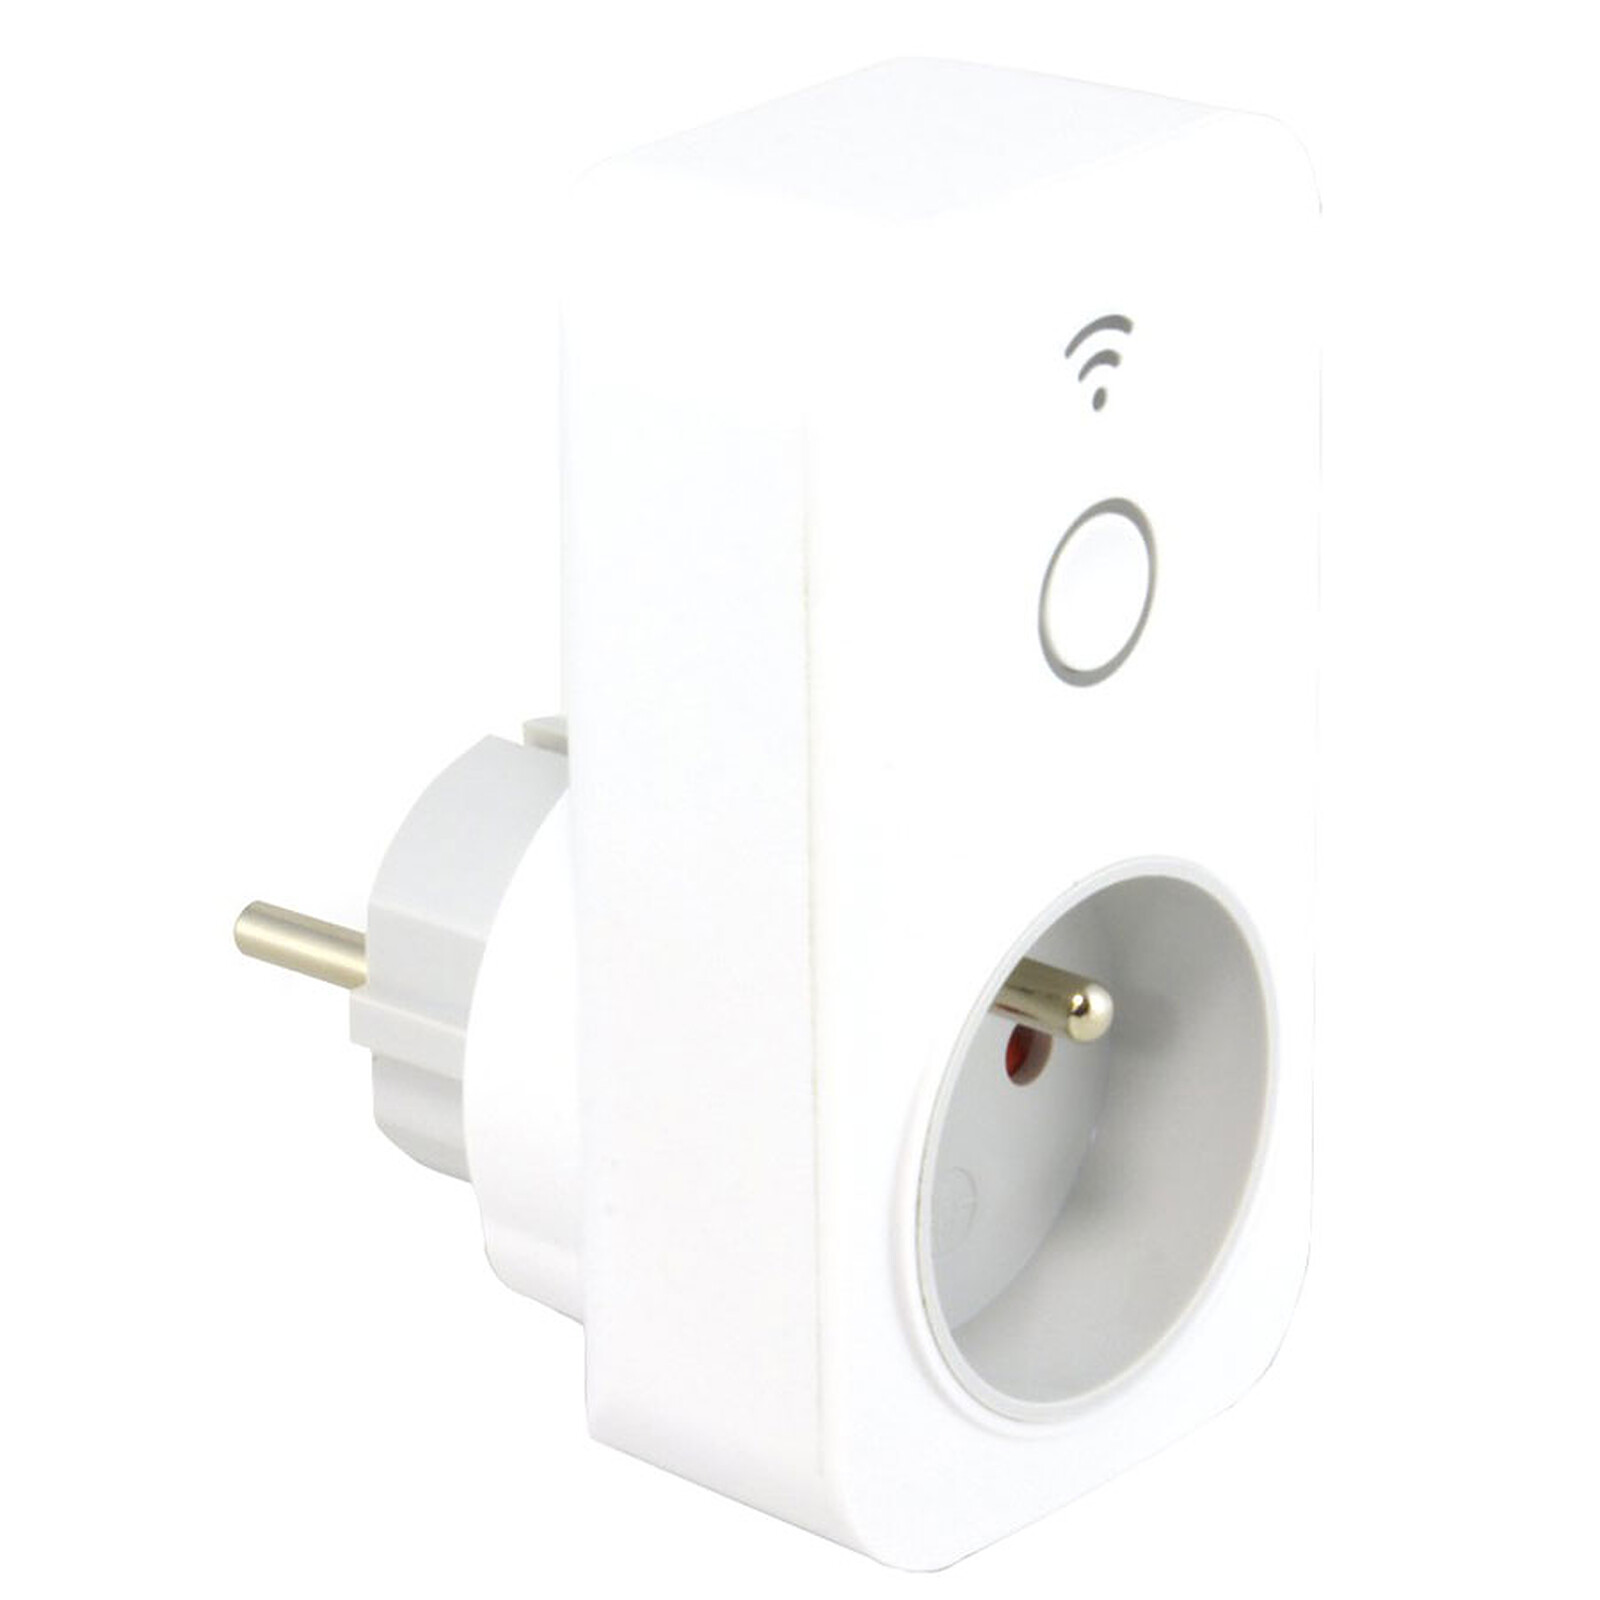 WiZ Smart Plug Powermeter - Prise connectée - Garantie 3 ans LDLC